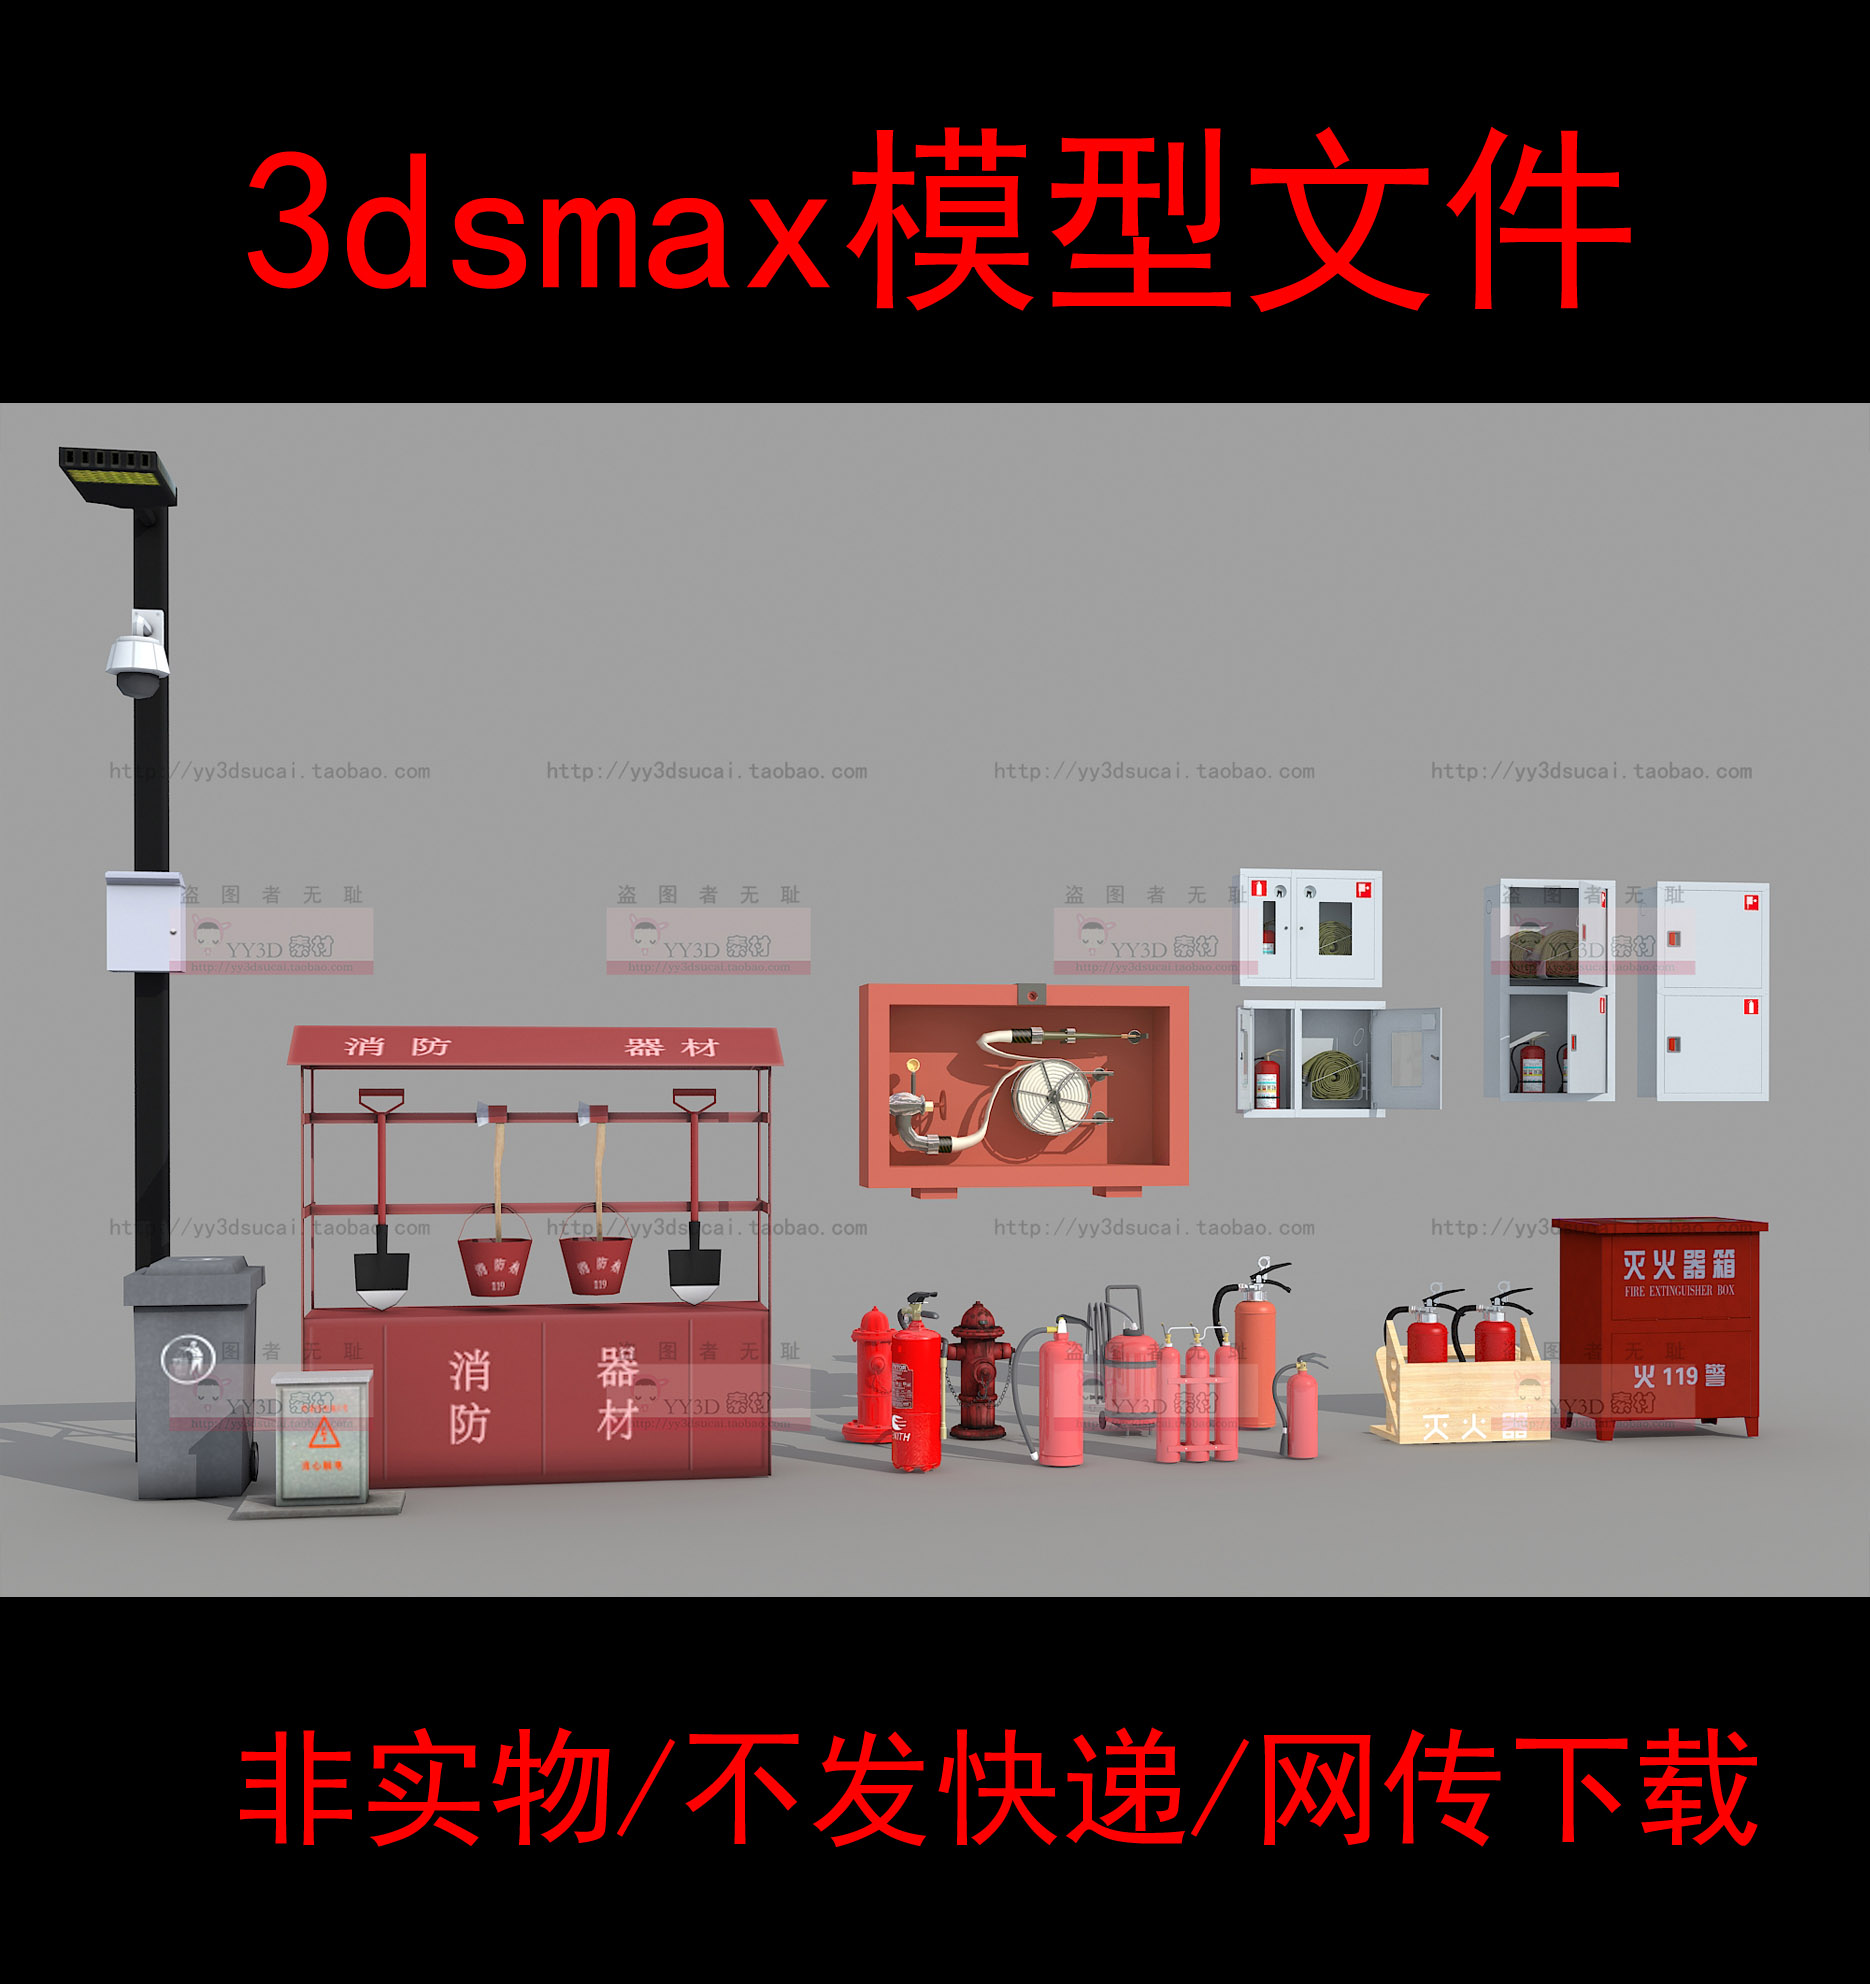 非实体无快递消防设施灭火器3dsmax模型素材消防器材3d消防箱防火